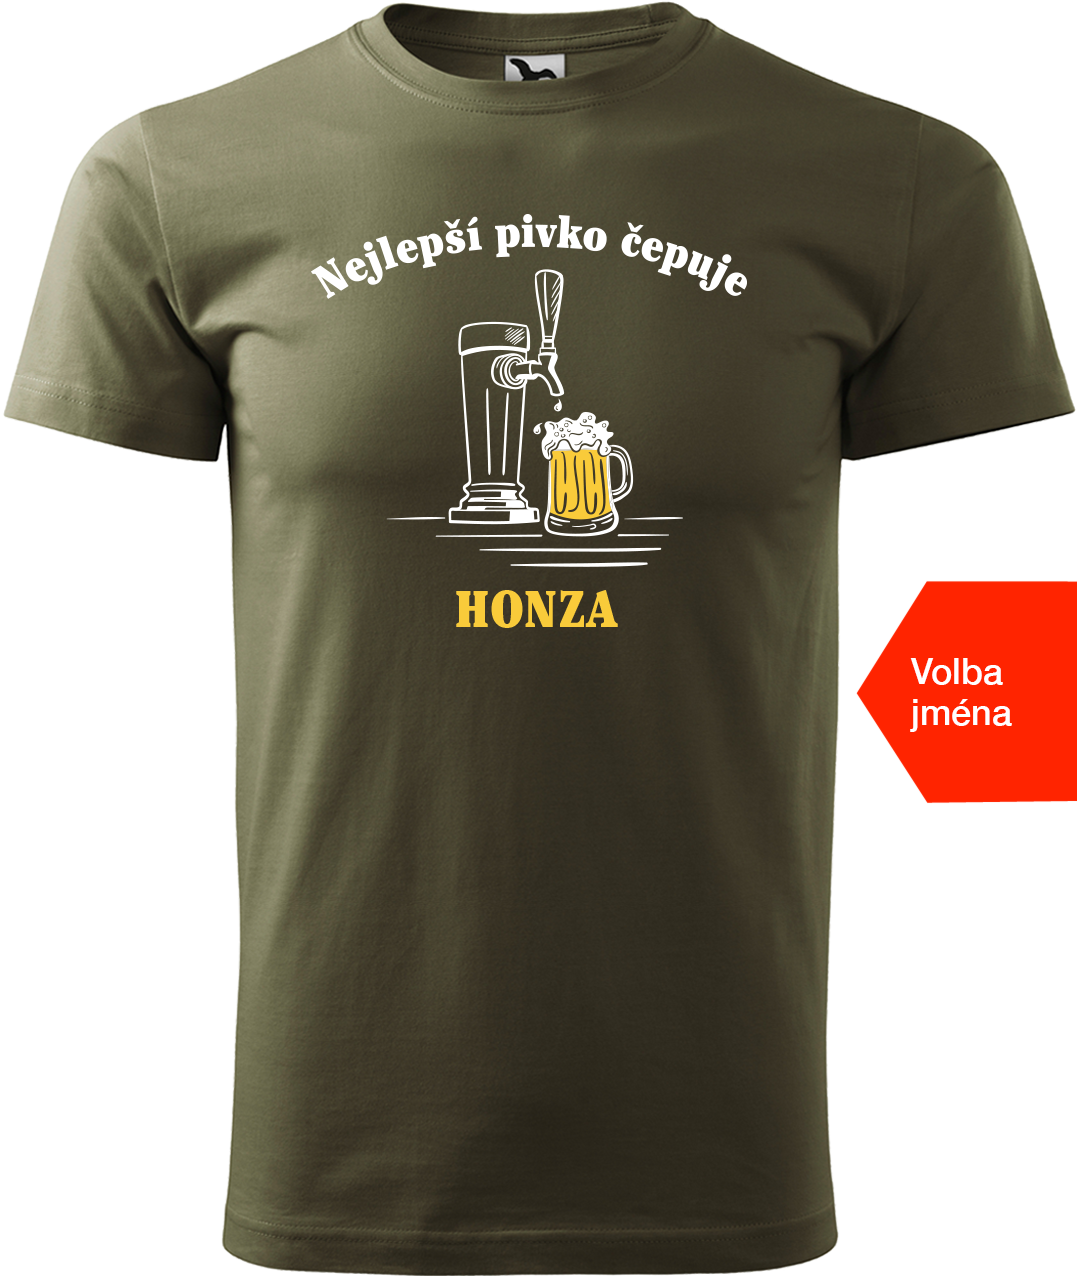 Pivní tričko - Nejlepší pivko čepuje + jméno Velikost: M, Barva: Military (69)